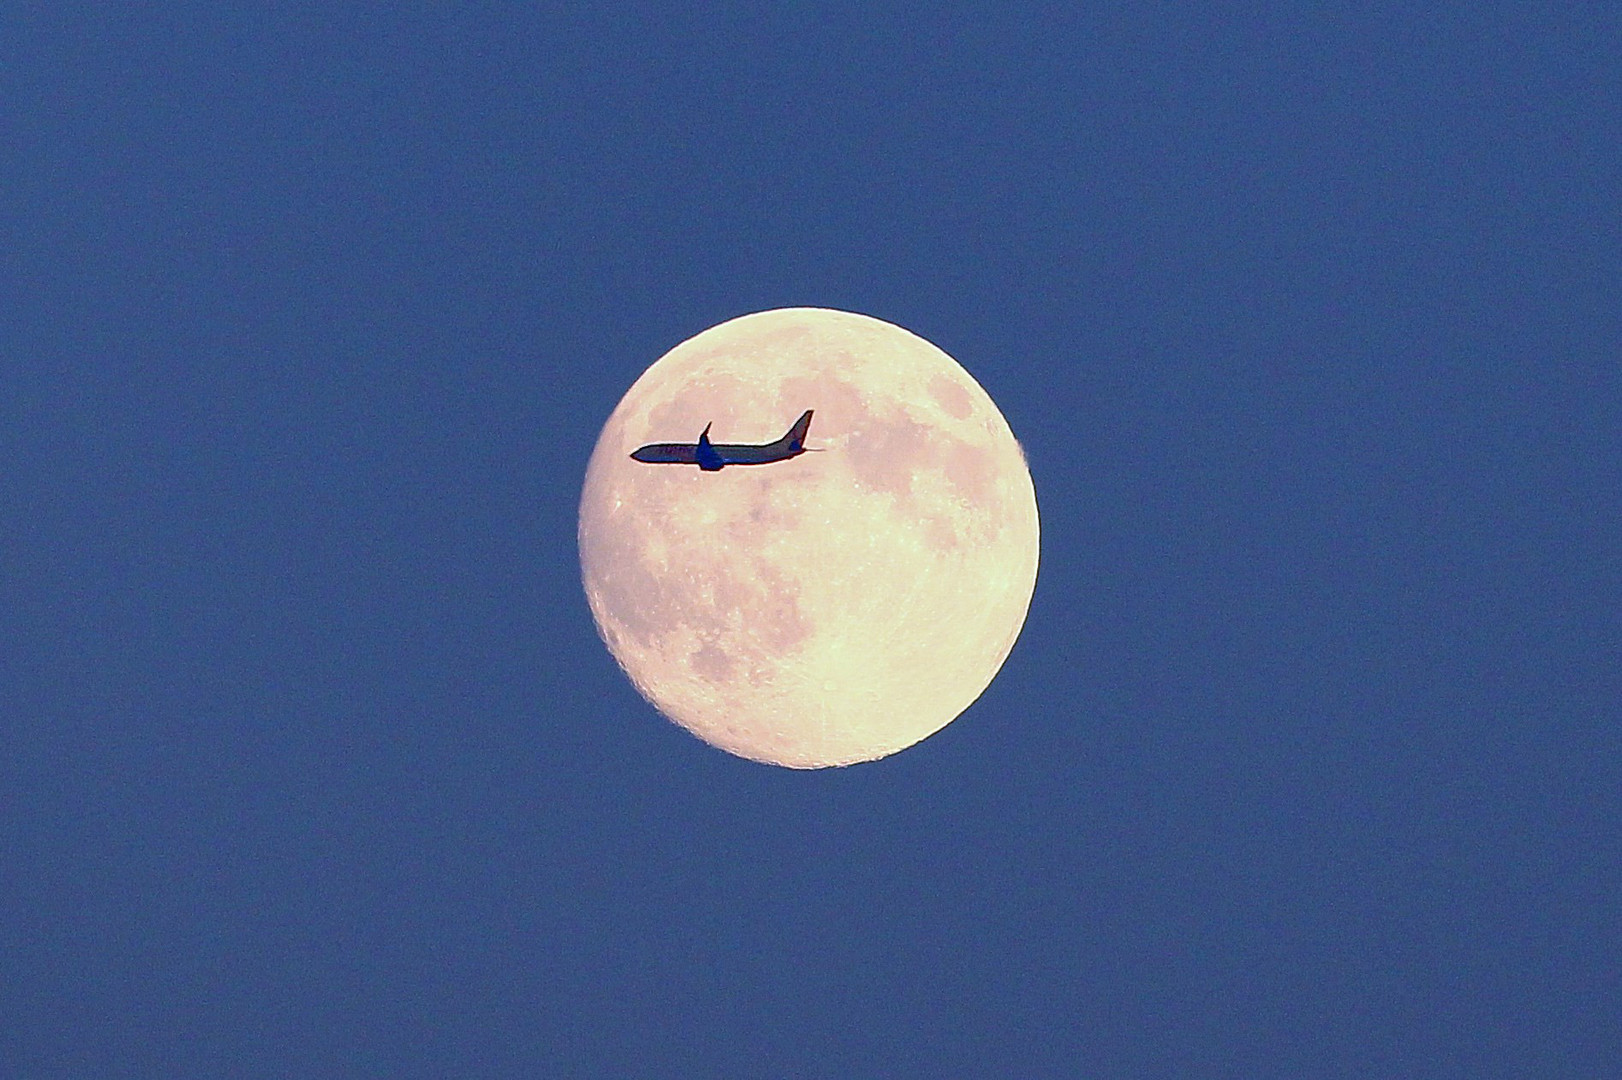 Mond mit Flugzeug (B737-800)